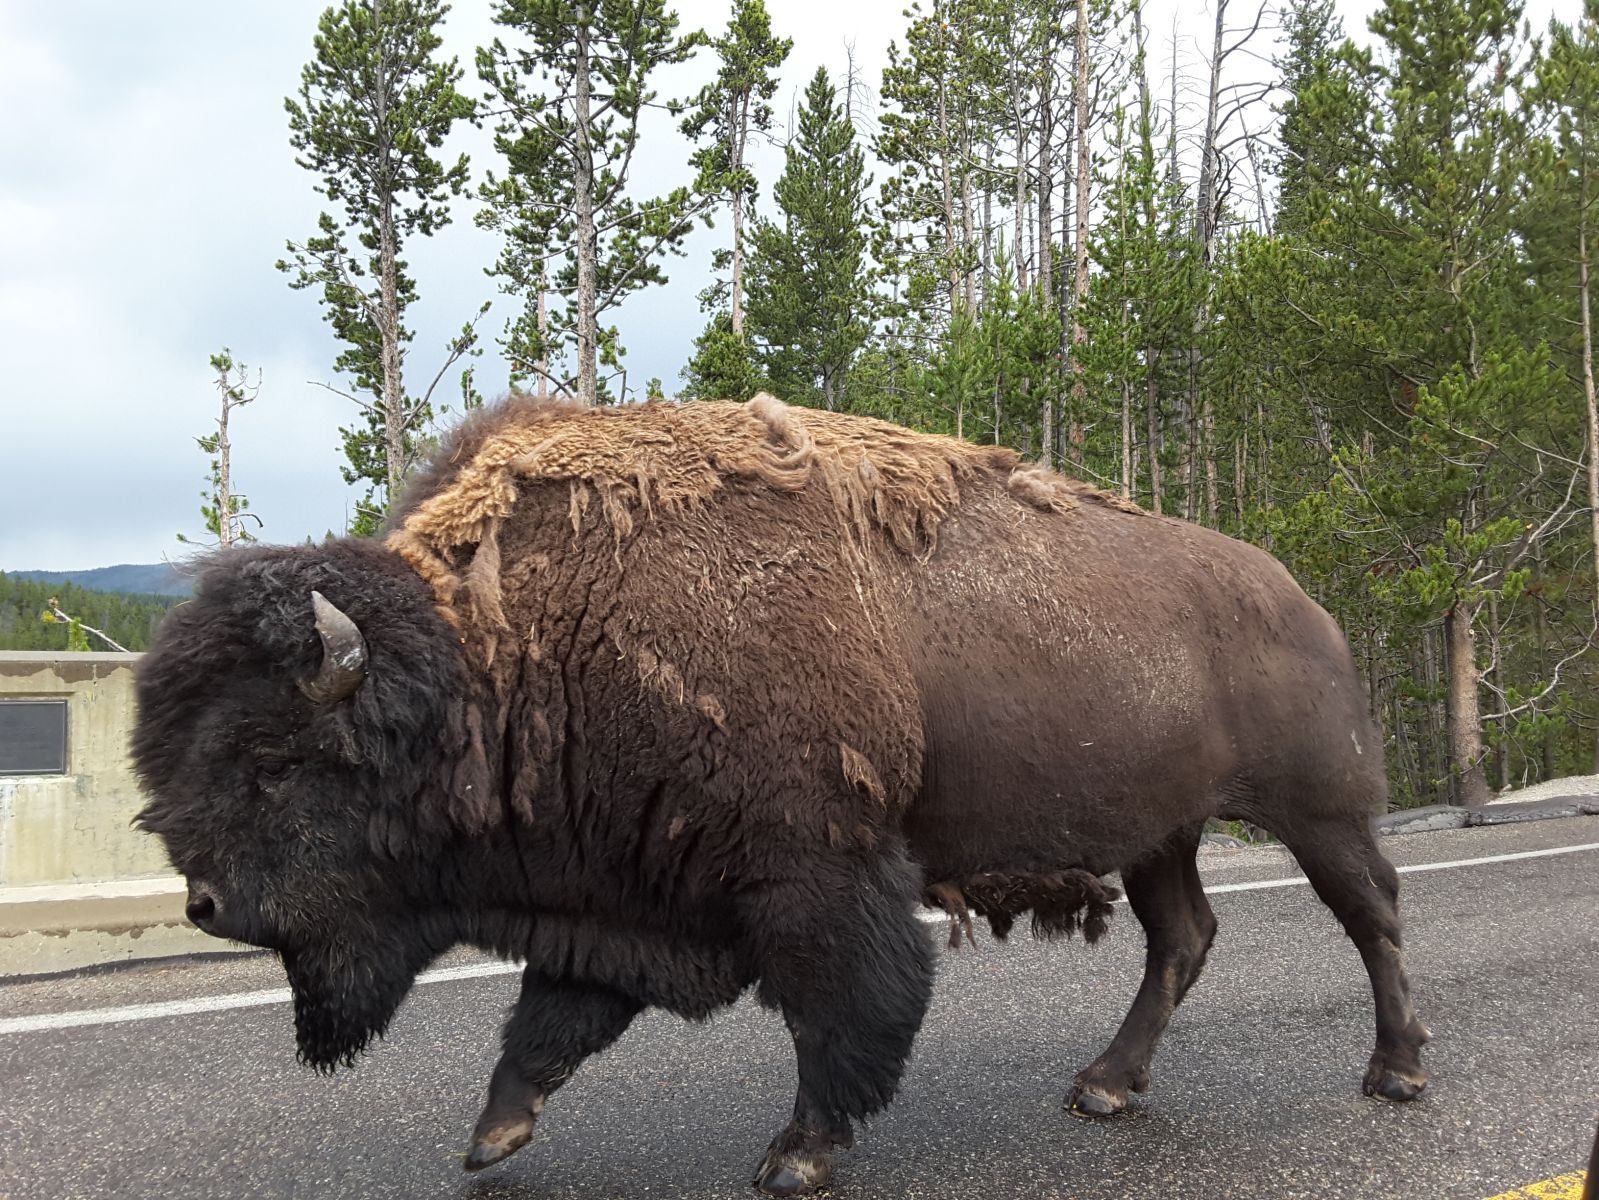 Buffalo @ Yellowstone